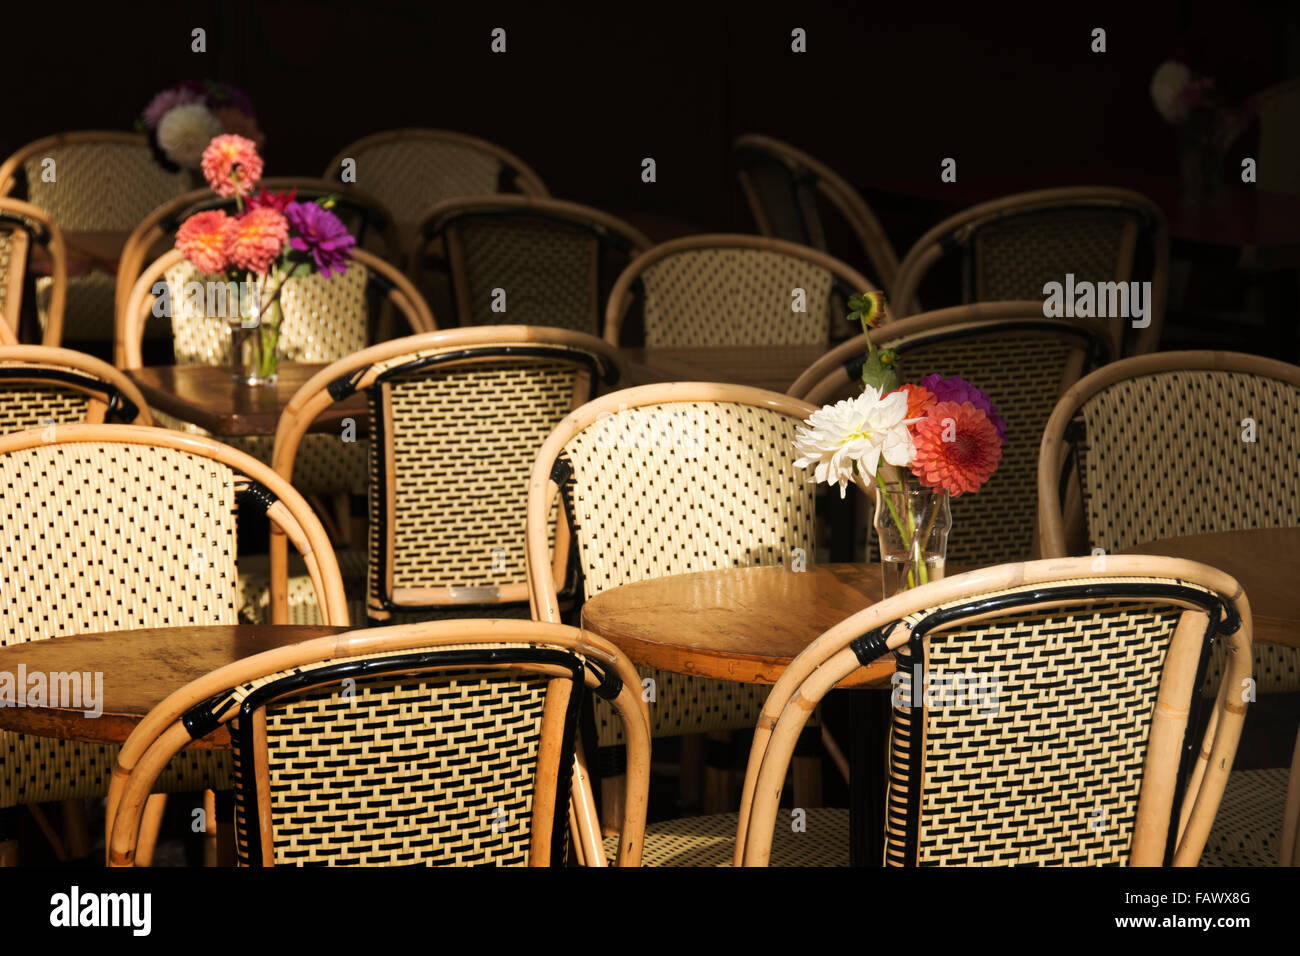 Un bouquet de fleurs vide entre les chaises et tables de bistrot parisien, Paris, France Banque D'Images